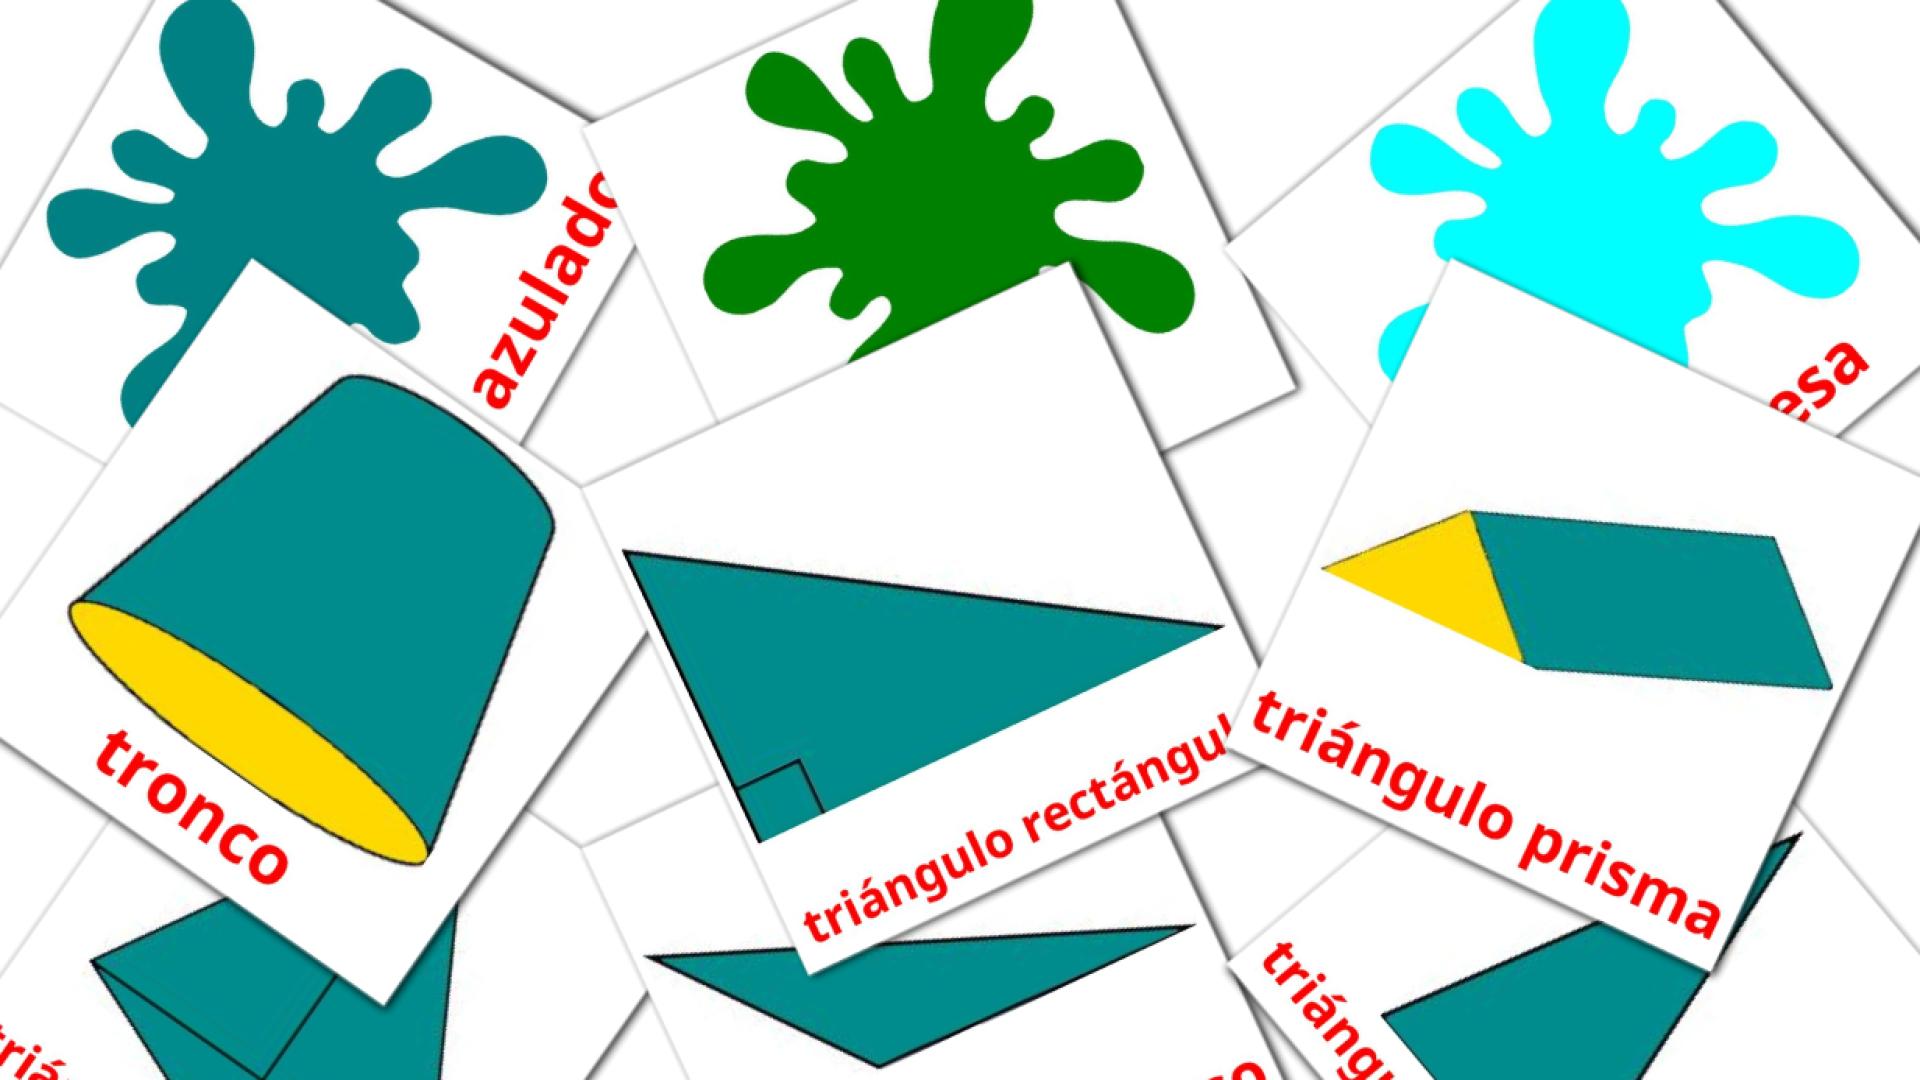 kirguís tarjetas de vocabulario en Colores y formas